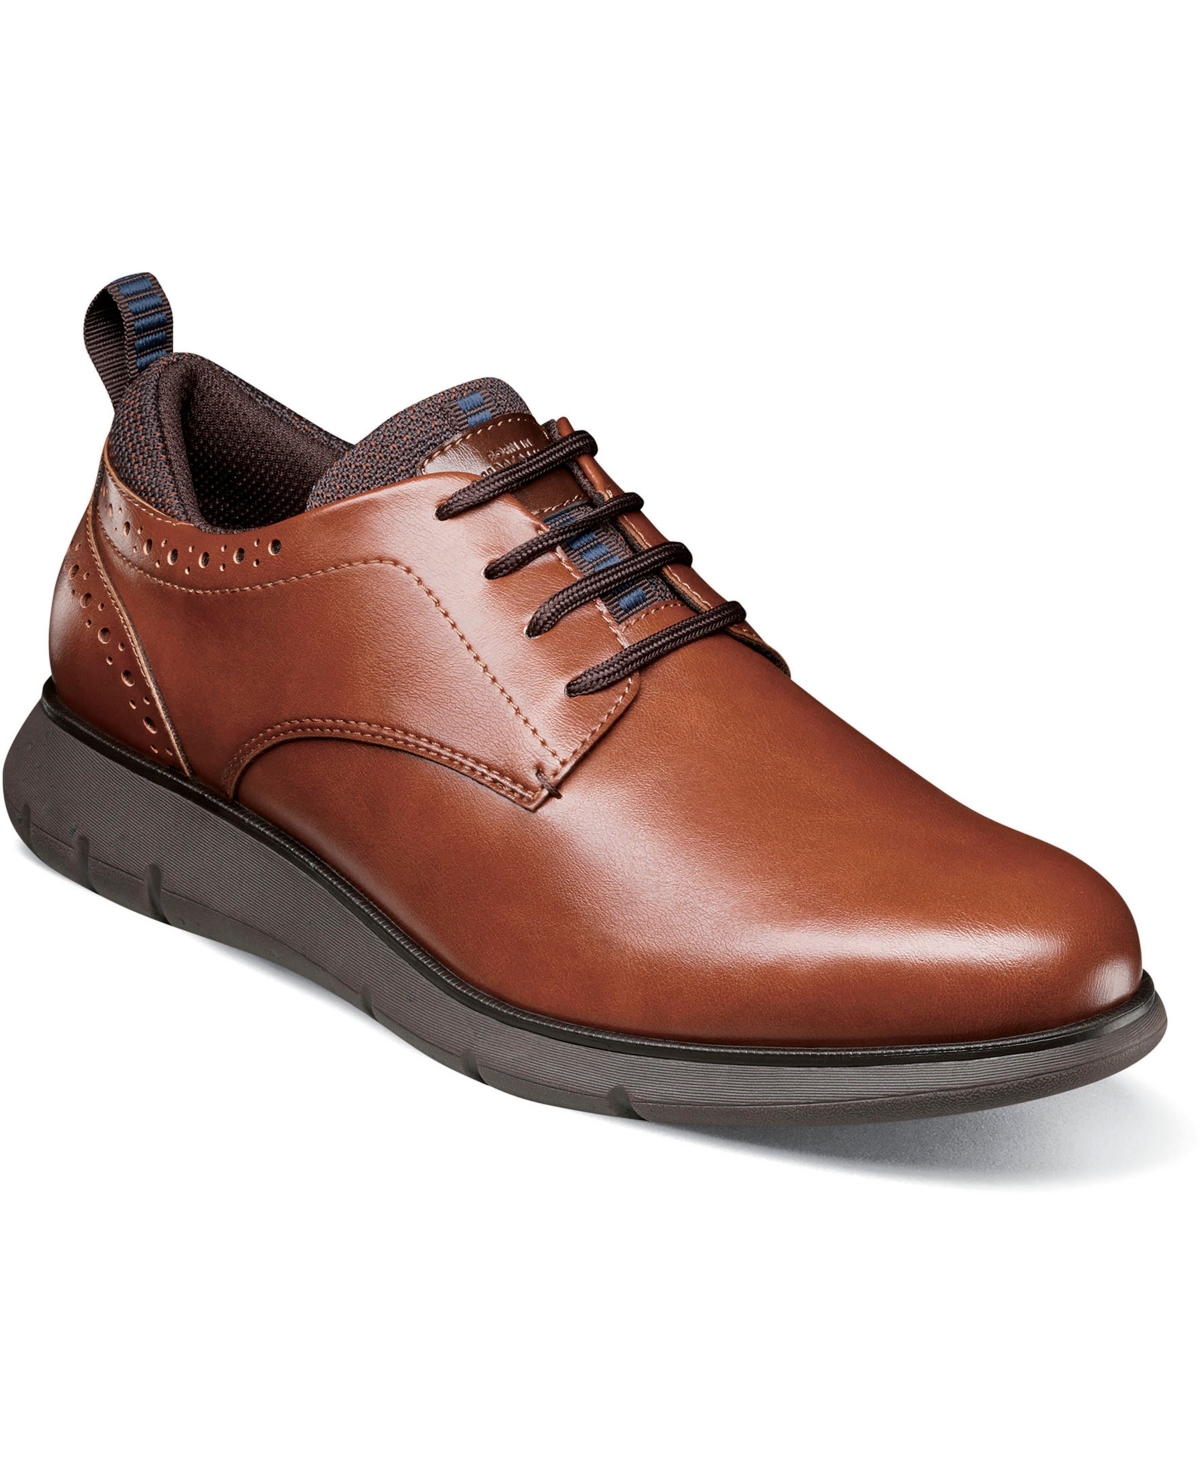 Men's Stance Plain Toe Oxford Shoes - Black Multi